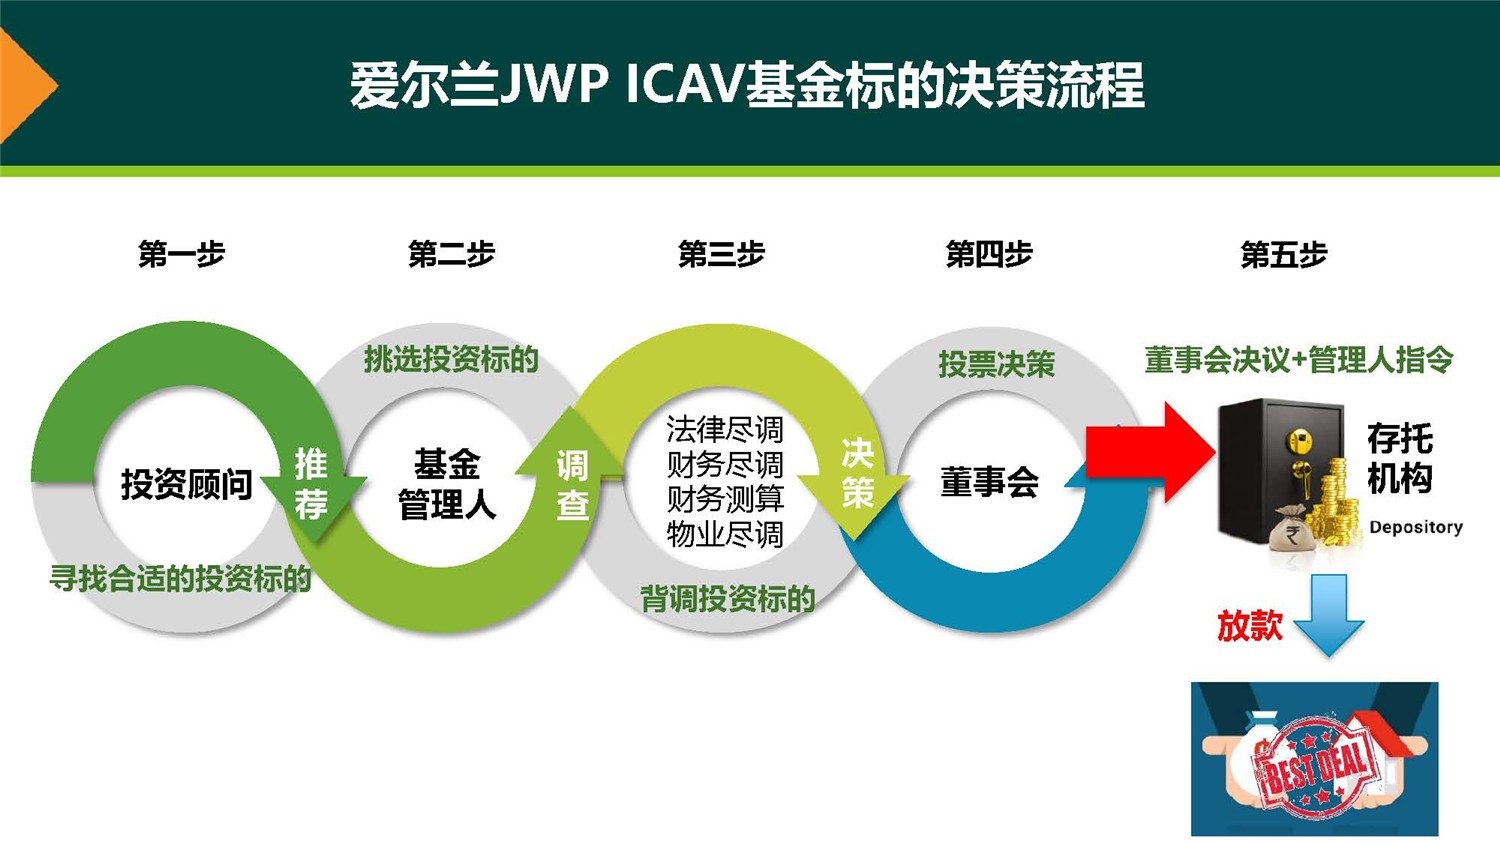 20190312_爱尔兰JWP ICAV基金项目_市场推广PPT简版(1)_页面_21.jpg